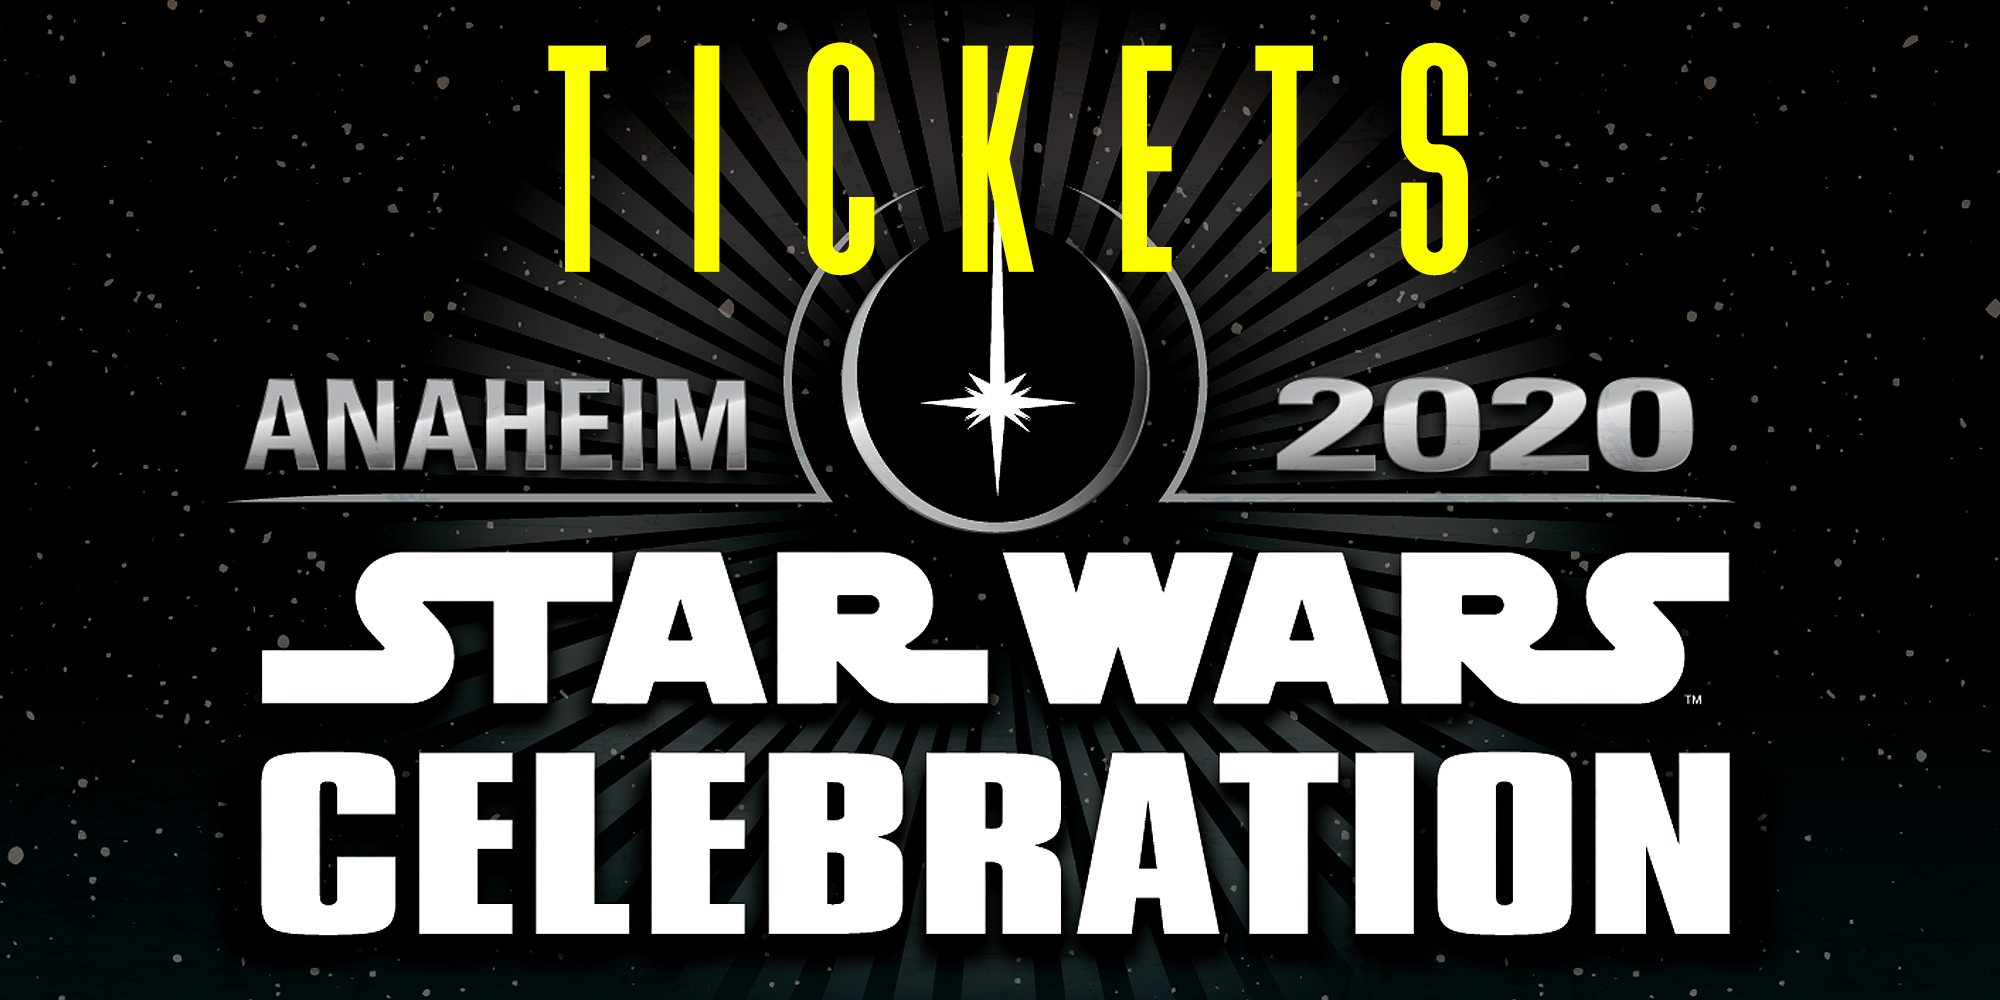 Star Wars Celebration Anaheim 2020 - Tickets On Sale Now!